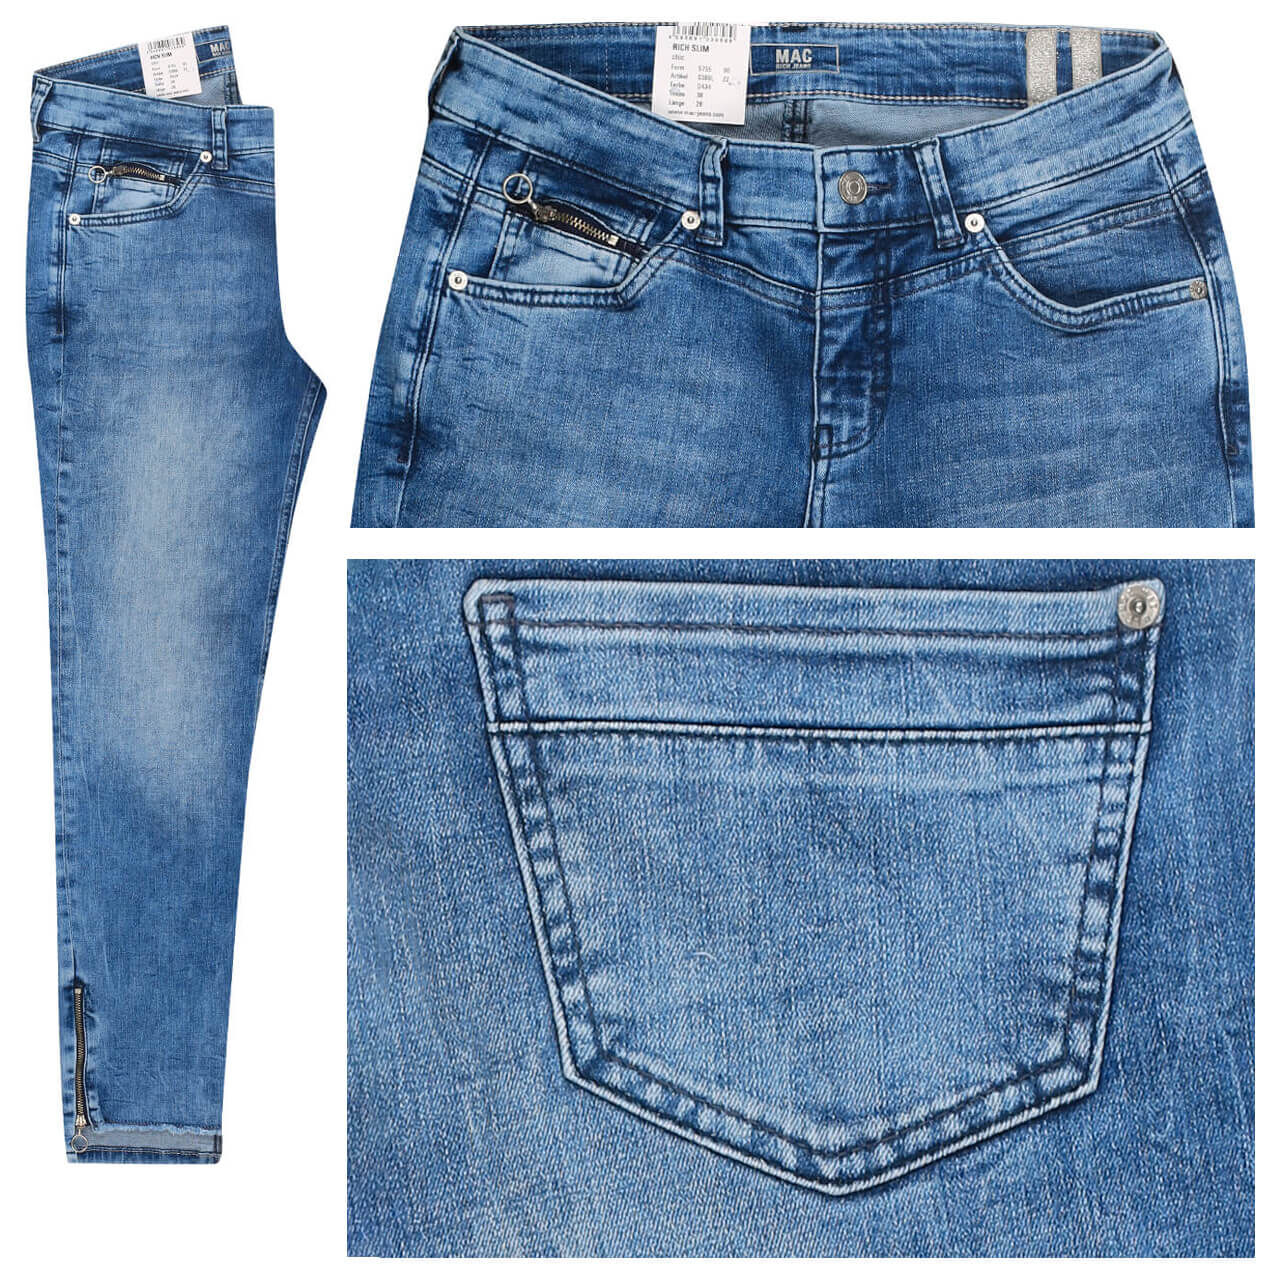 MAC Jeans Rich Slim für Damen in Blau verwaschen, FarbNr.: D434